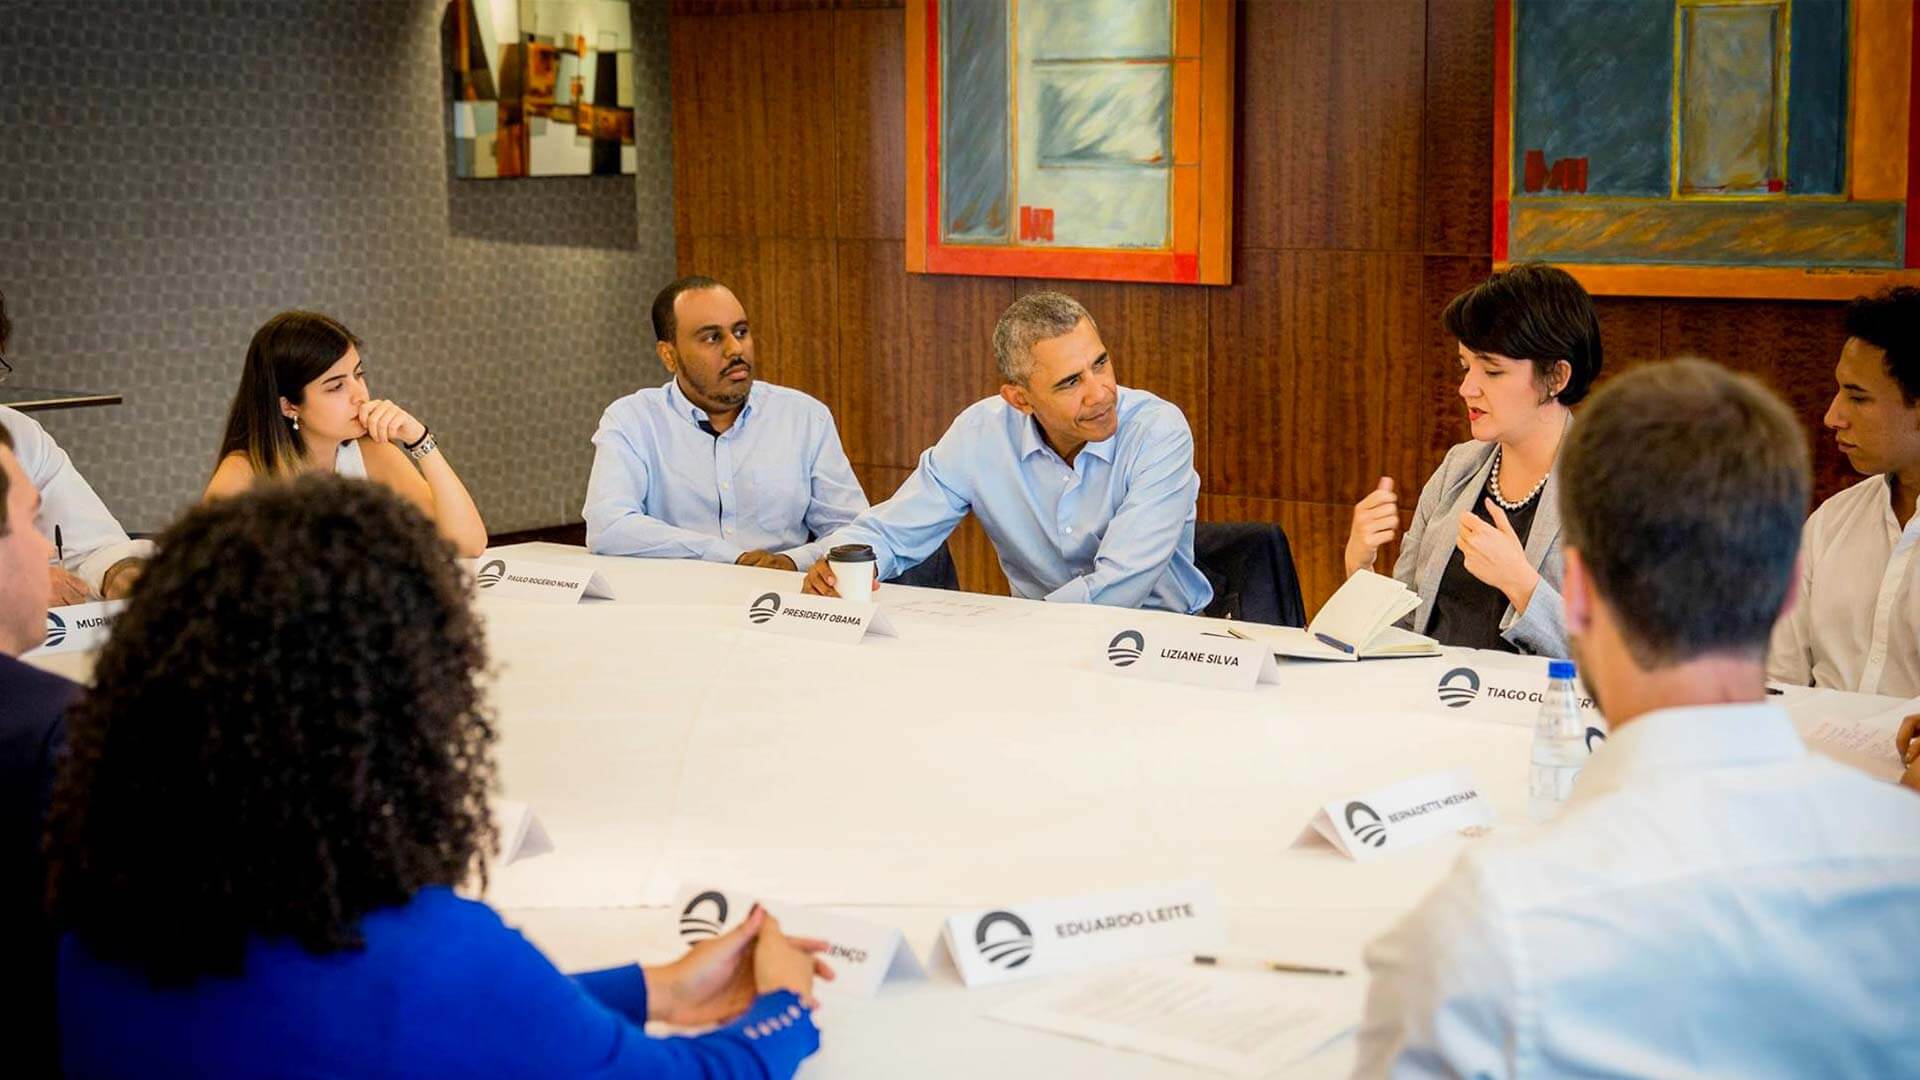 Lemann Fellows têm encontro inspirador com Obama